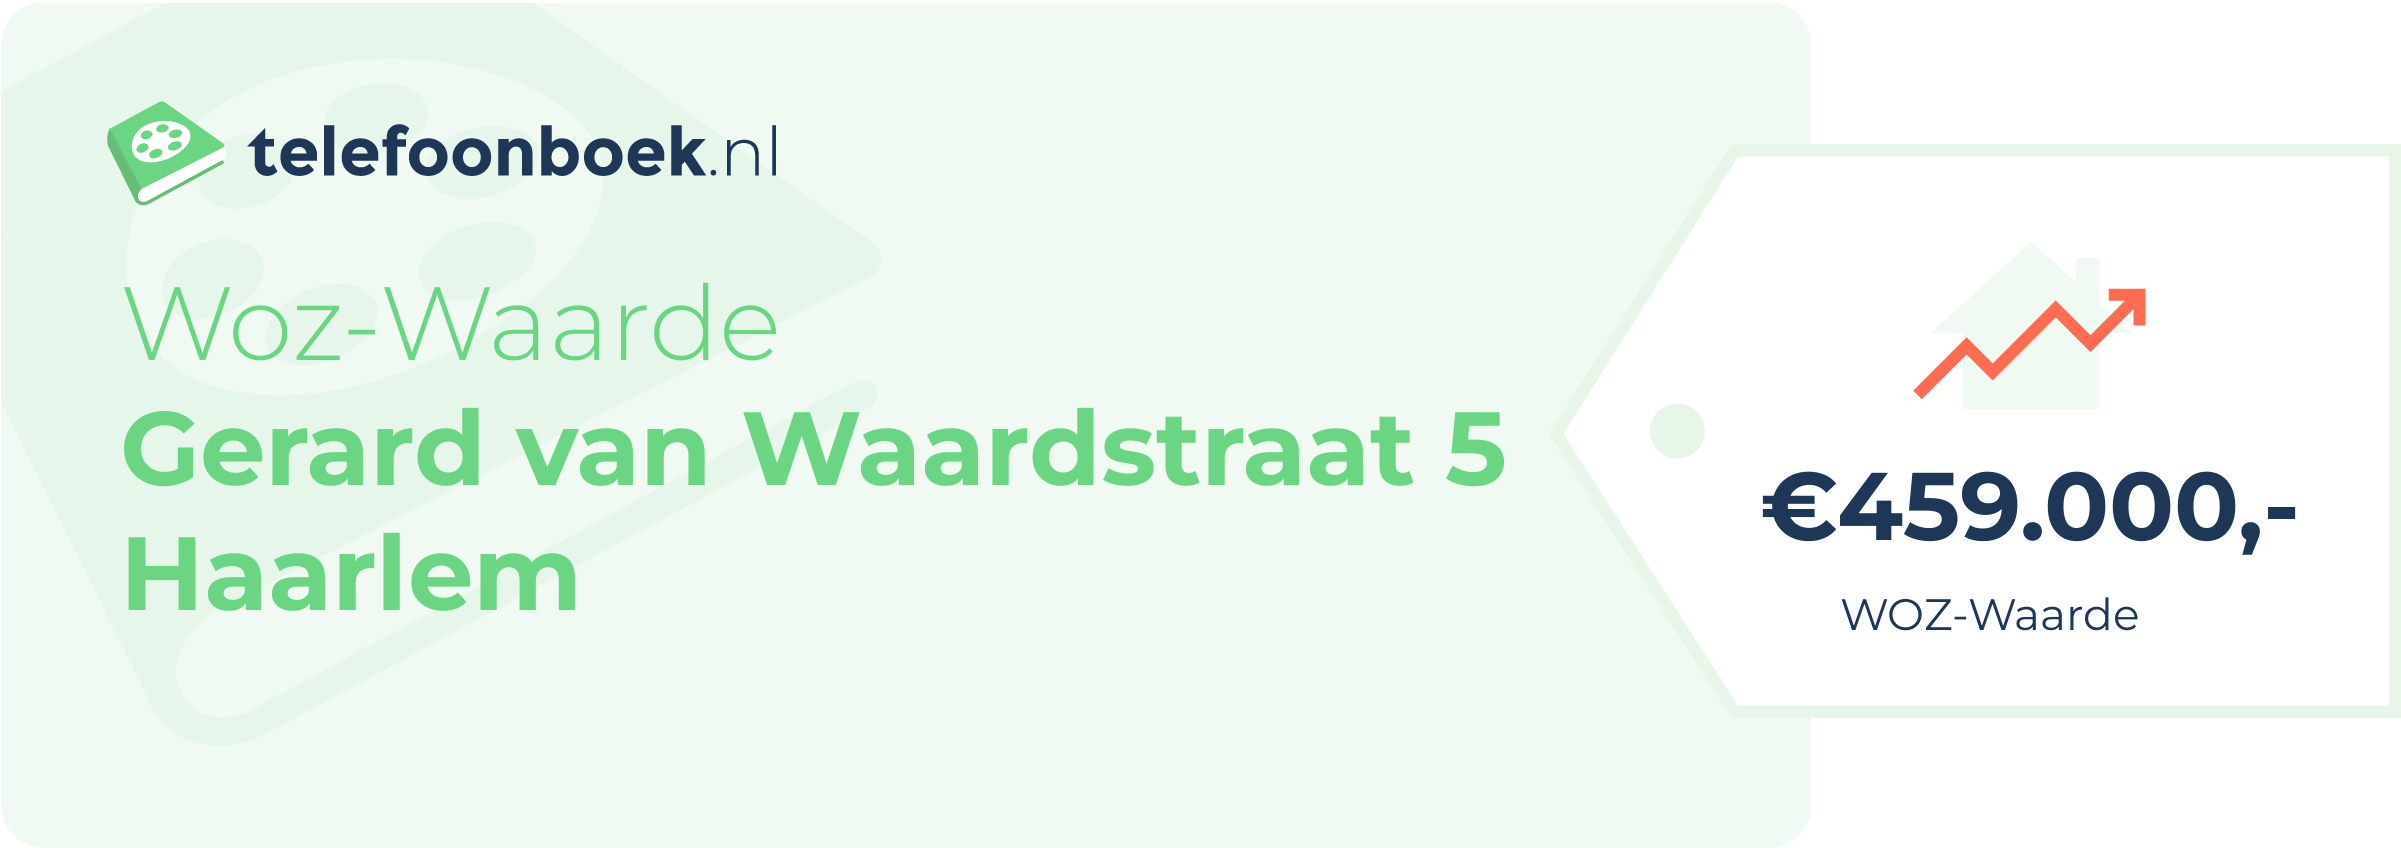 WOZ-waarde Gerard Van Waardstraat 5 Haarlem